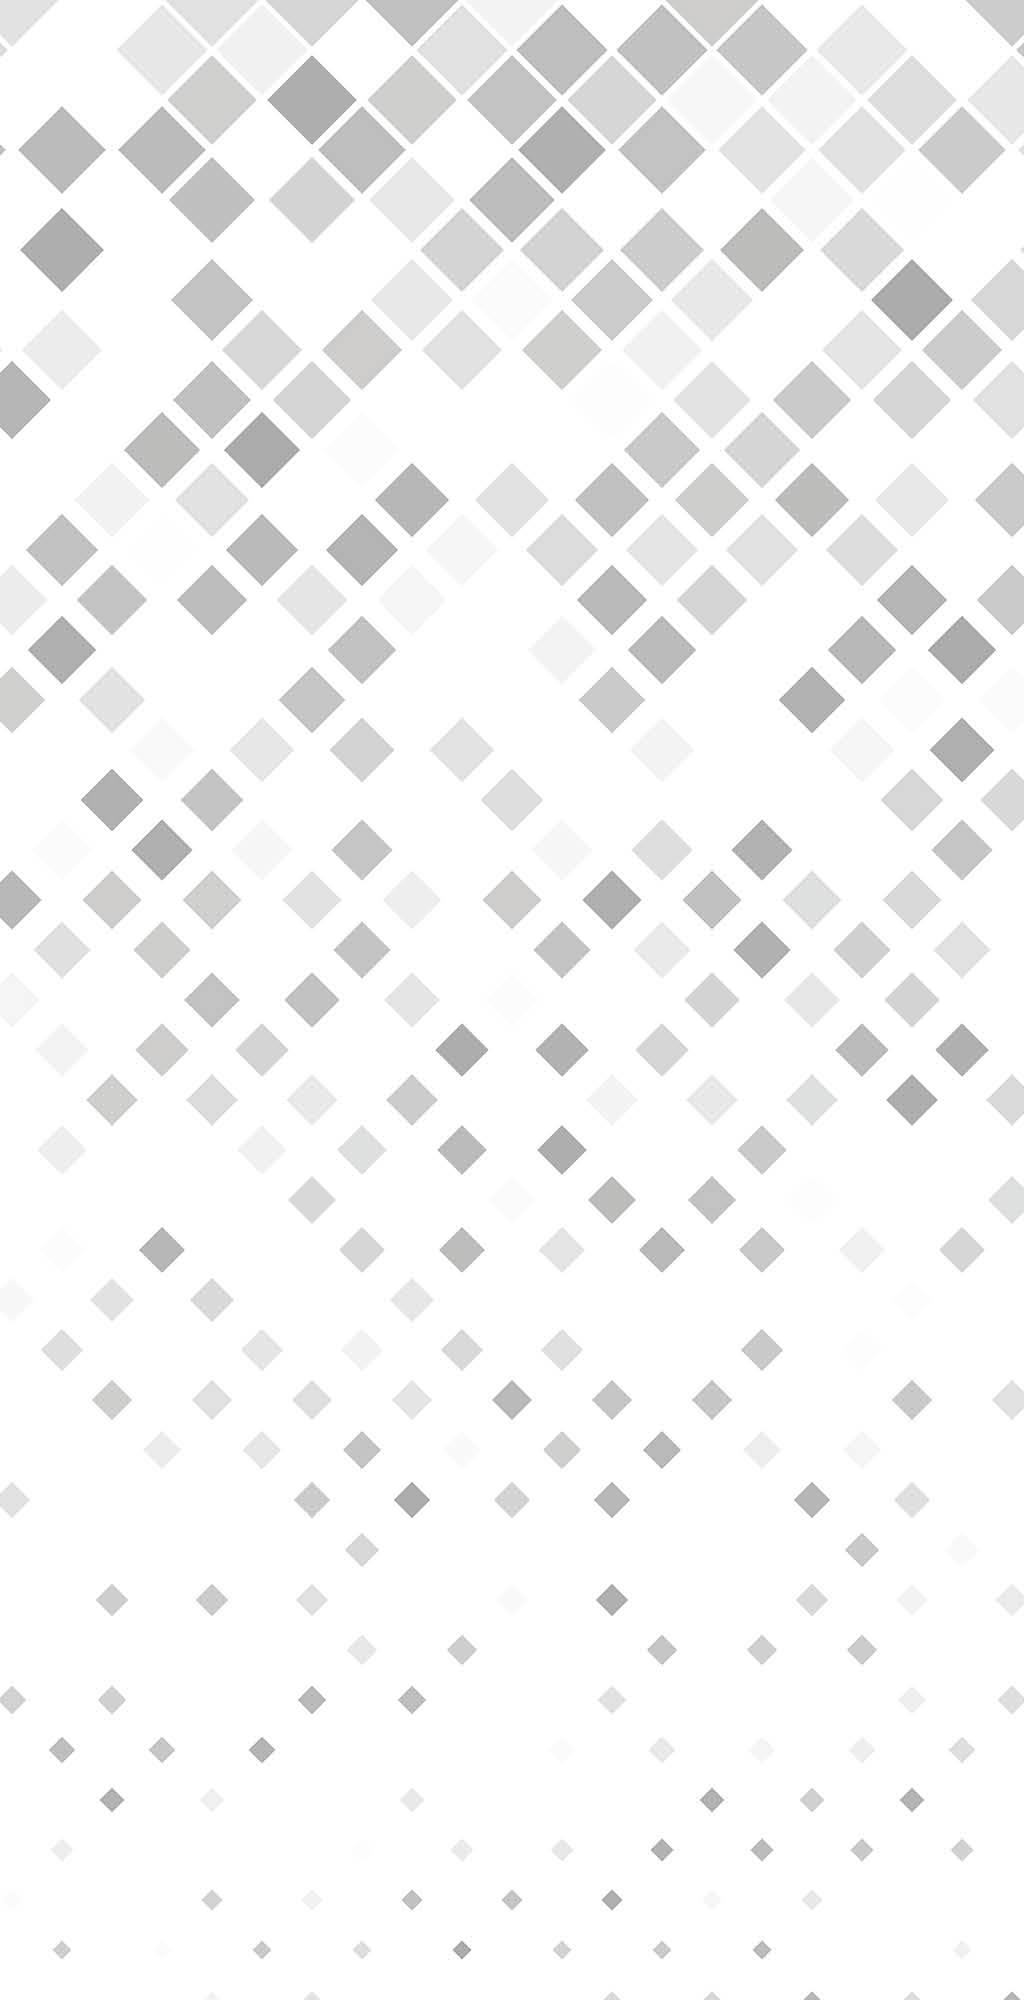 Grey square pattern background design - vector illustration